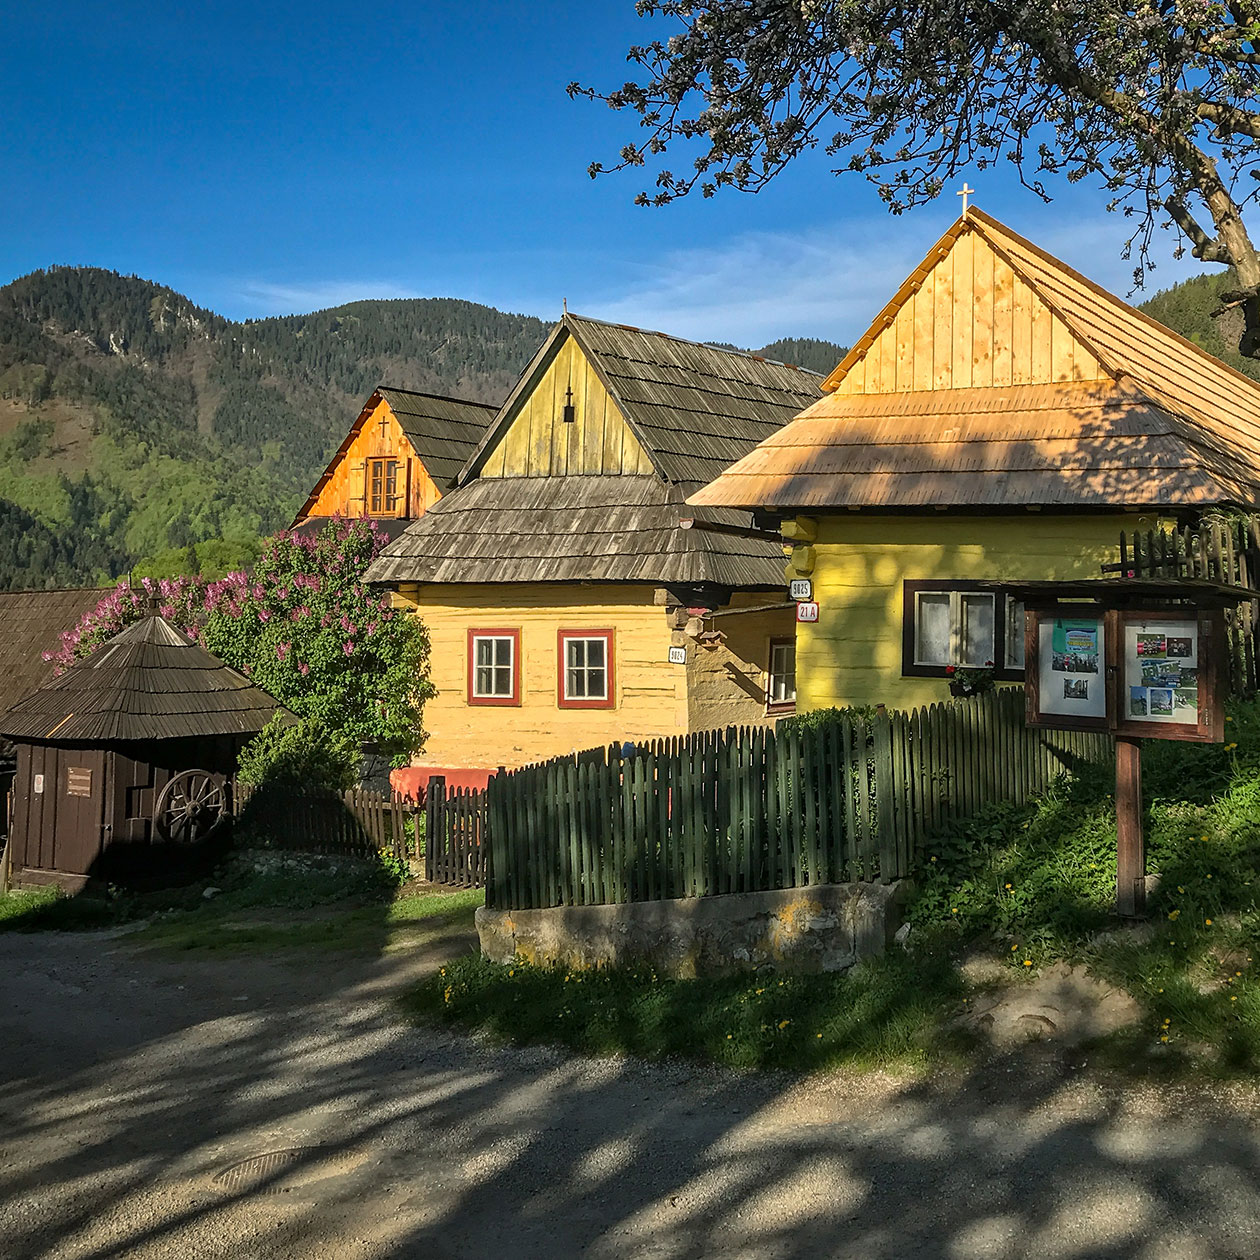 Vlkolinec - Wooden Village of UNESCO Heritage II.